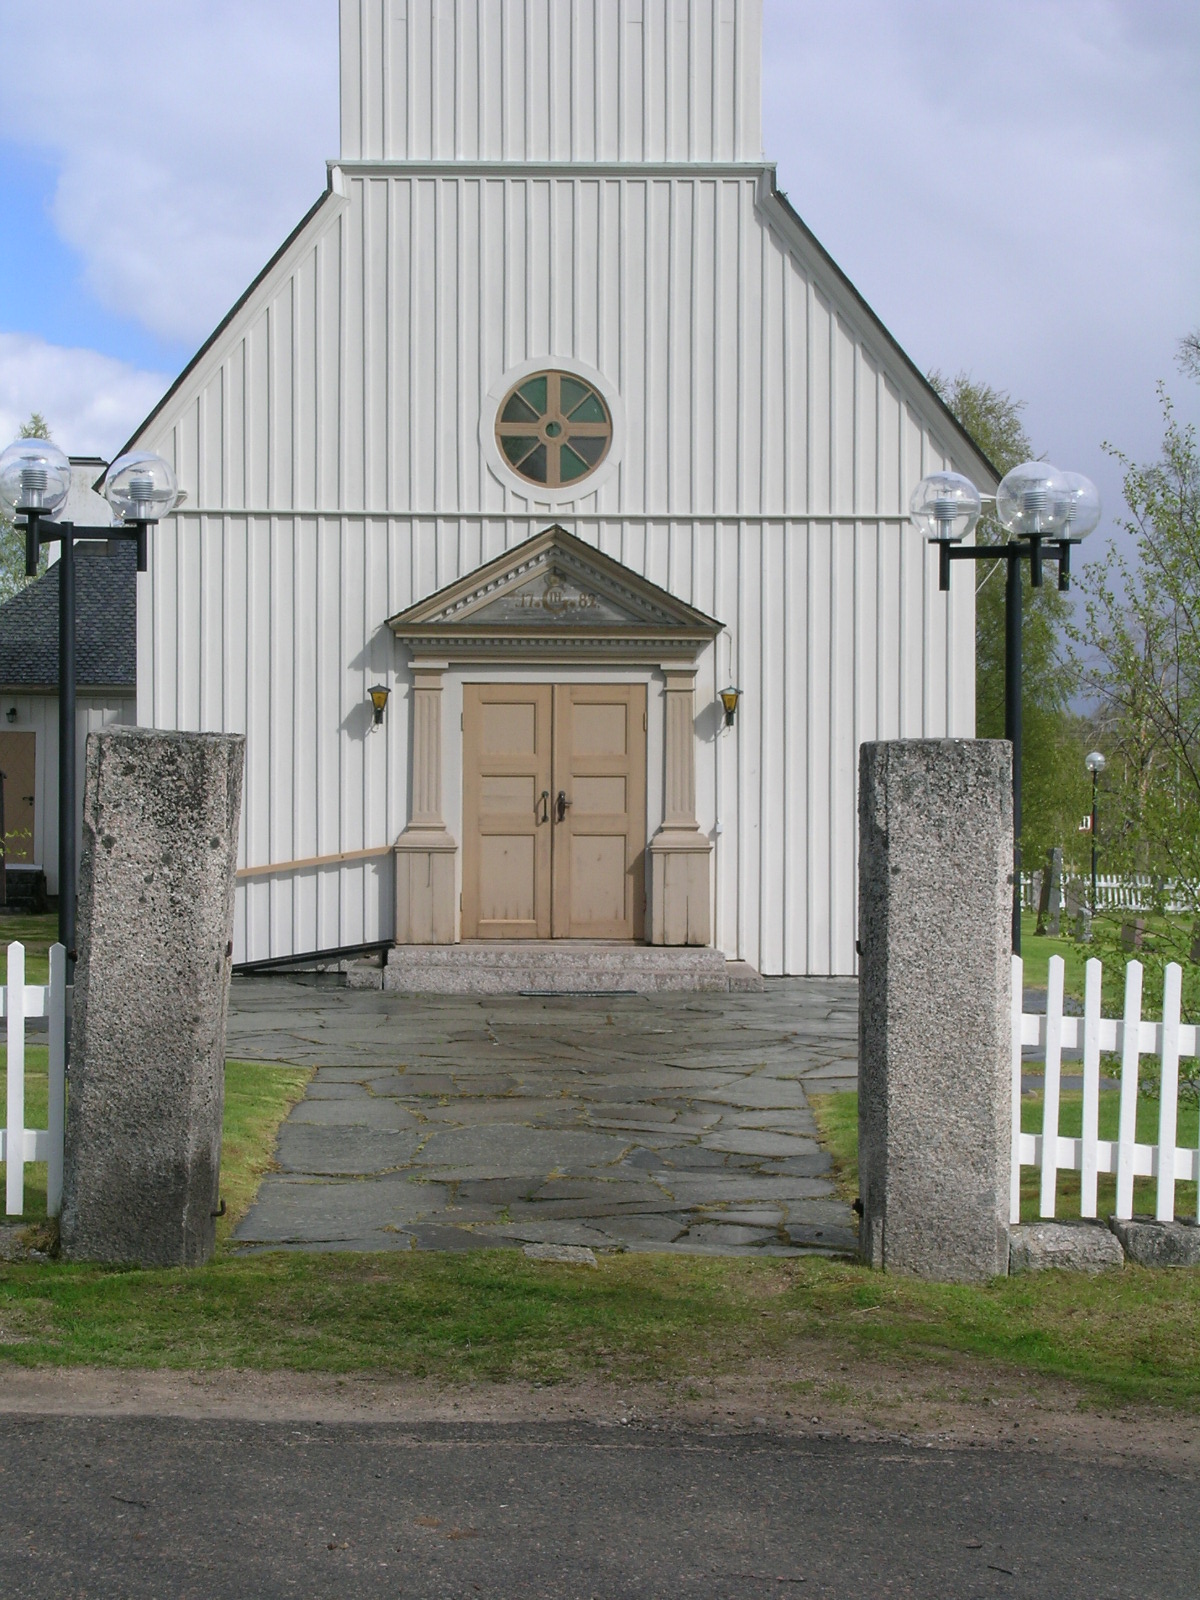 Ängersjö kyrka, exteriör, västra fasaden med porten. 

Bilderna är tagna av Isa Lindkvist & Christina Persson, Bebyggelseantikvarier vid Jämtlands läns museum, i samband med inventeringen, 2005-2006. 